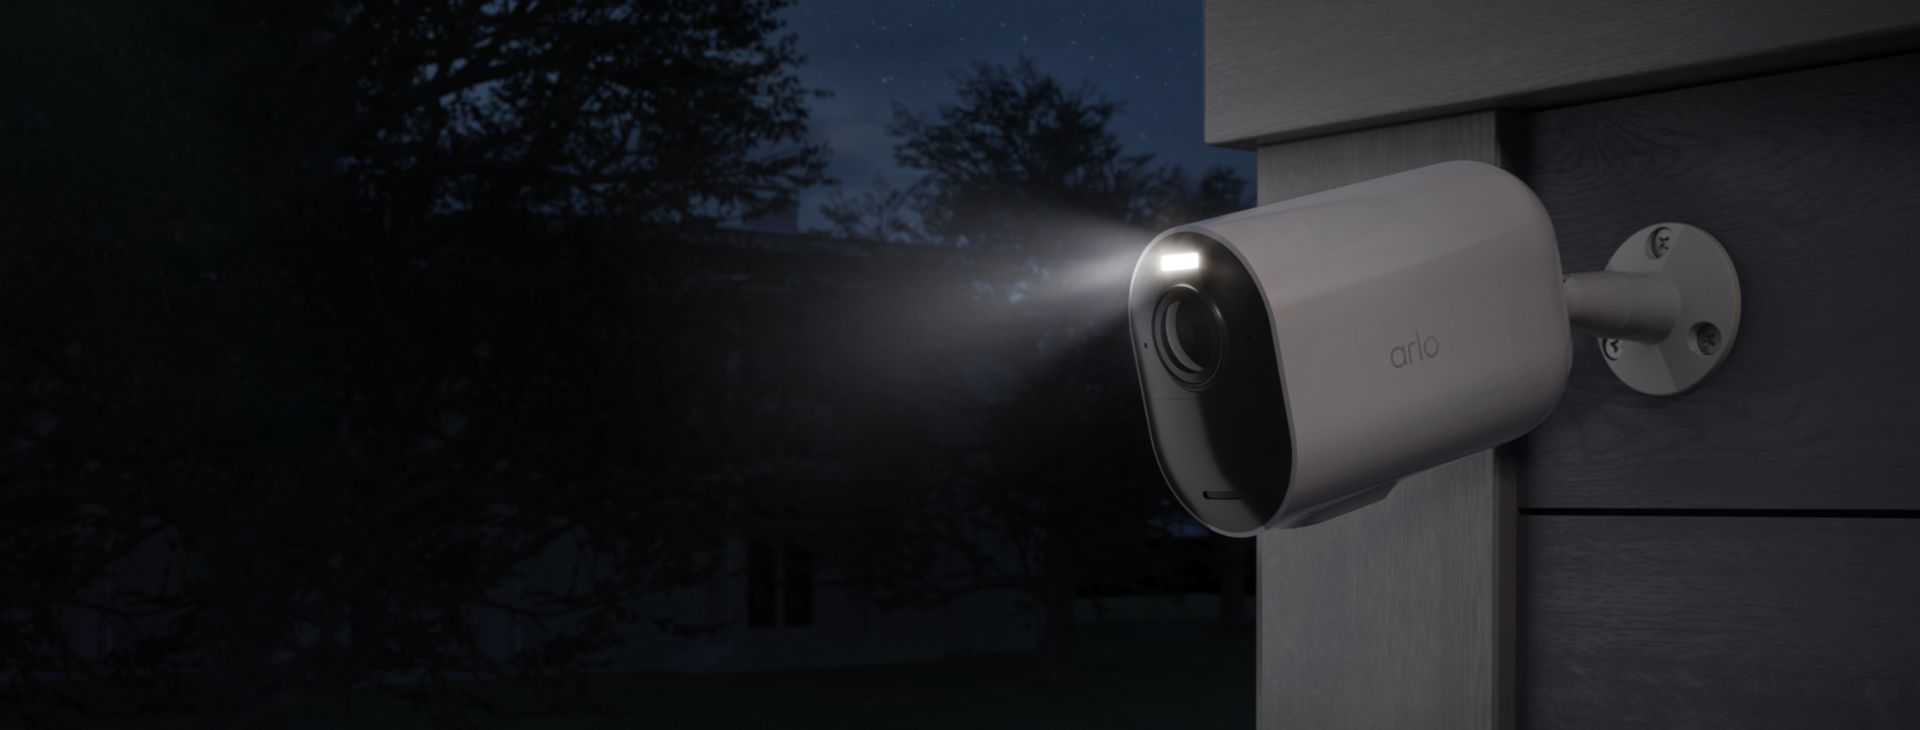 Die Arlo Ultra 2 XL Überwachungskamera, installiert an einer Wand bei Nacht mit eingeschaltetem Strahler.